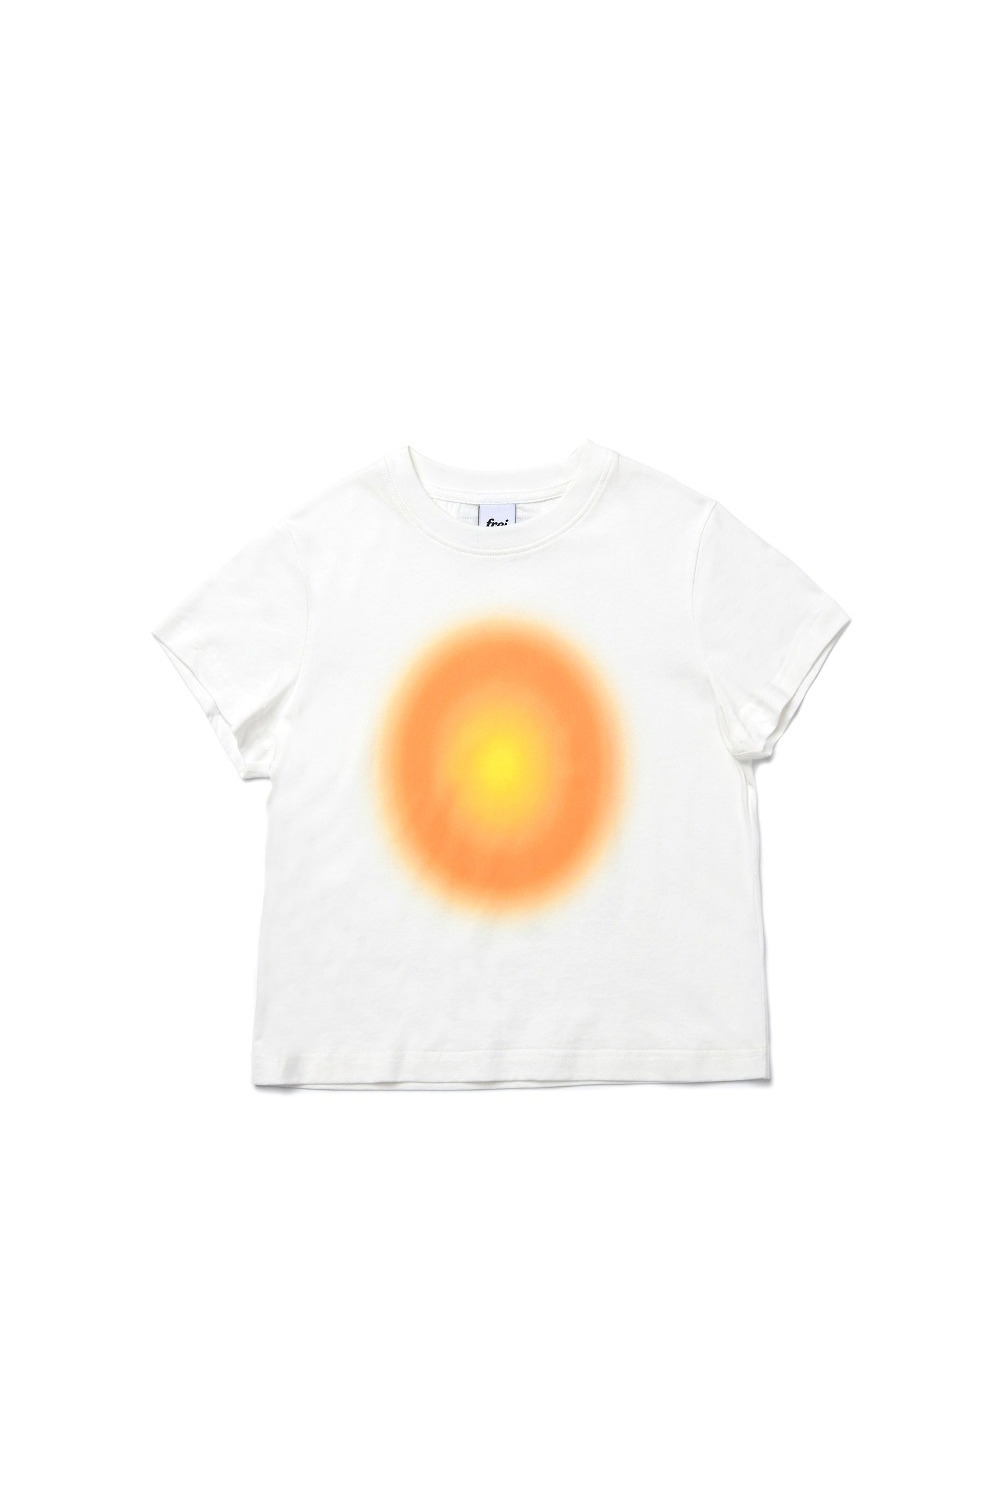 PASSED 티셔츠 (오렌지) - 리치즈 RICHEZ